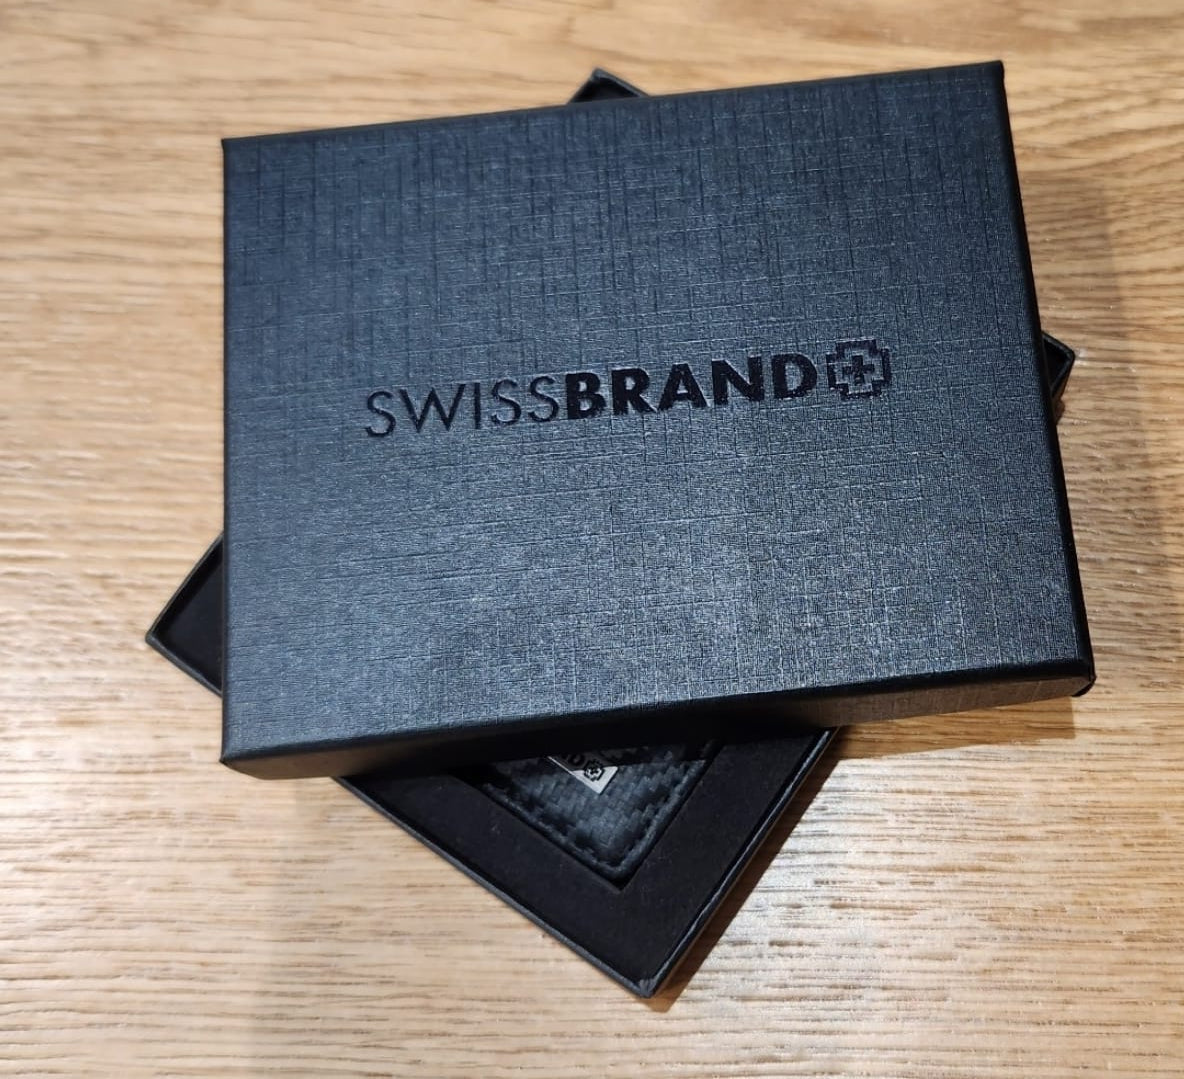 ✮מותג שוויצרי מקורי✮ ארנק עור קלאסי מבית המותג SwissBrand דגם Monaco Bifold